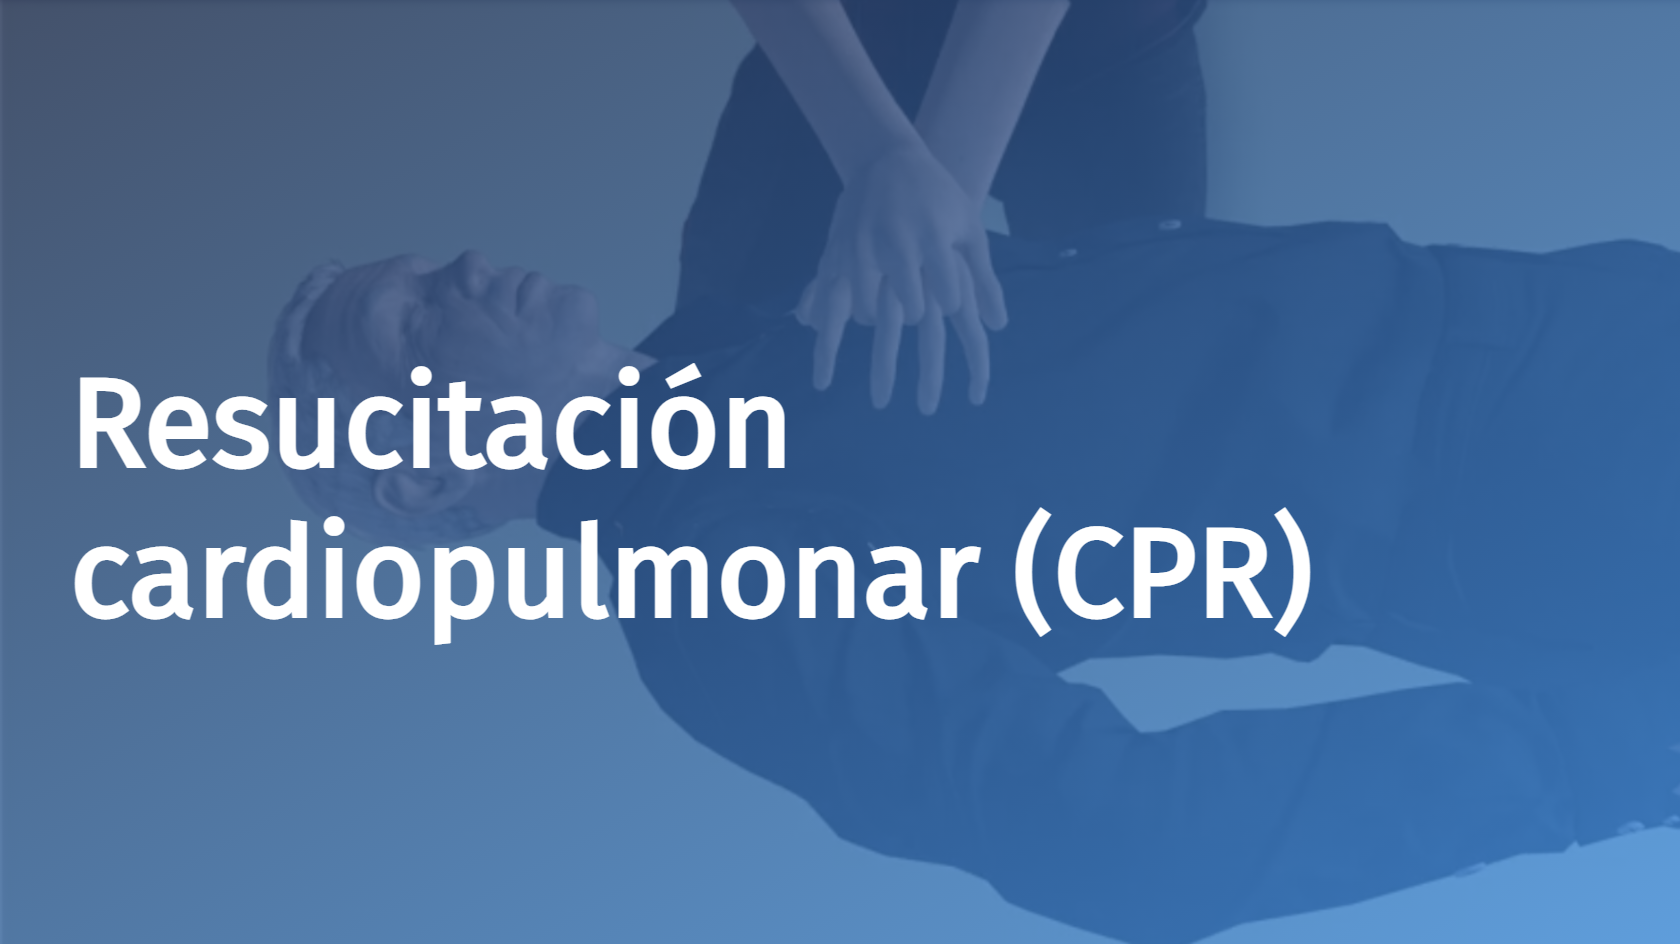 Spanish - Cardiopulmonary Resuscitation (CPR)